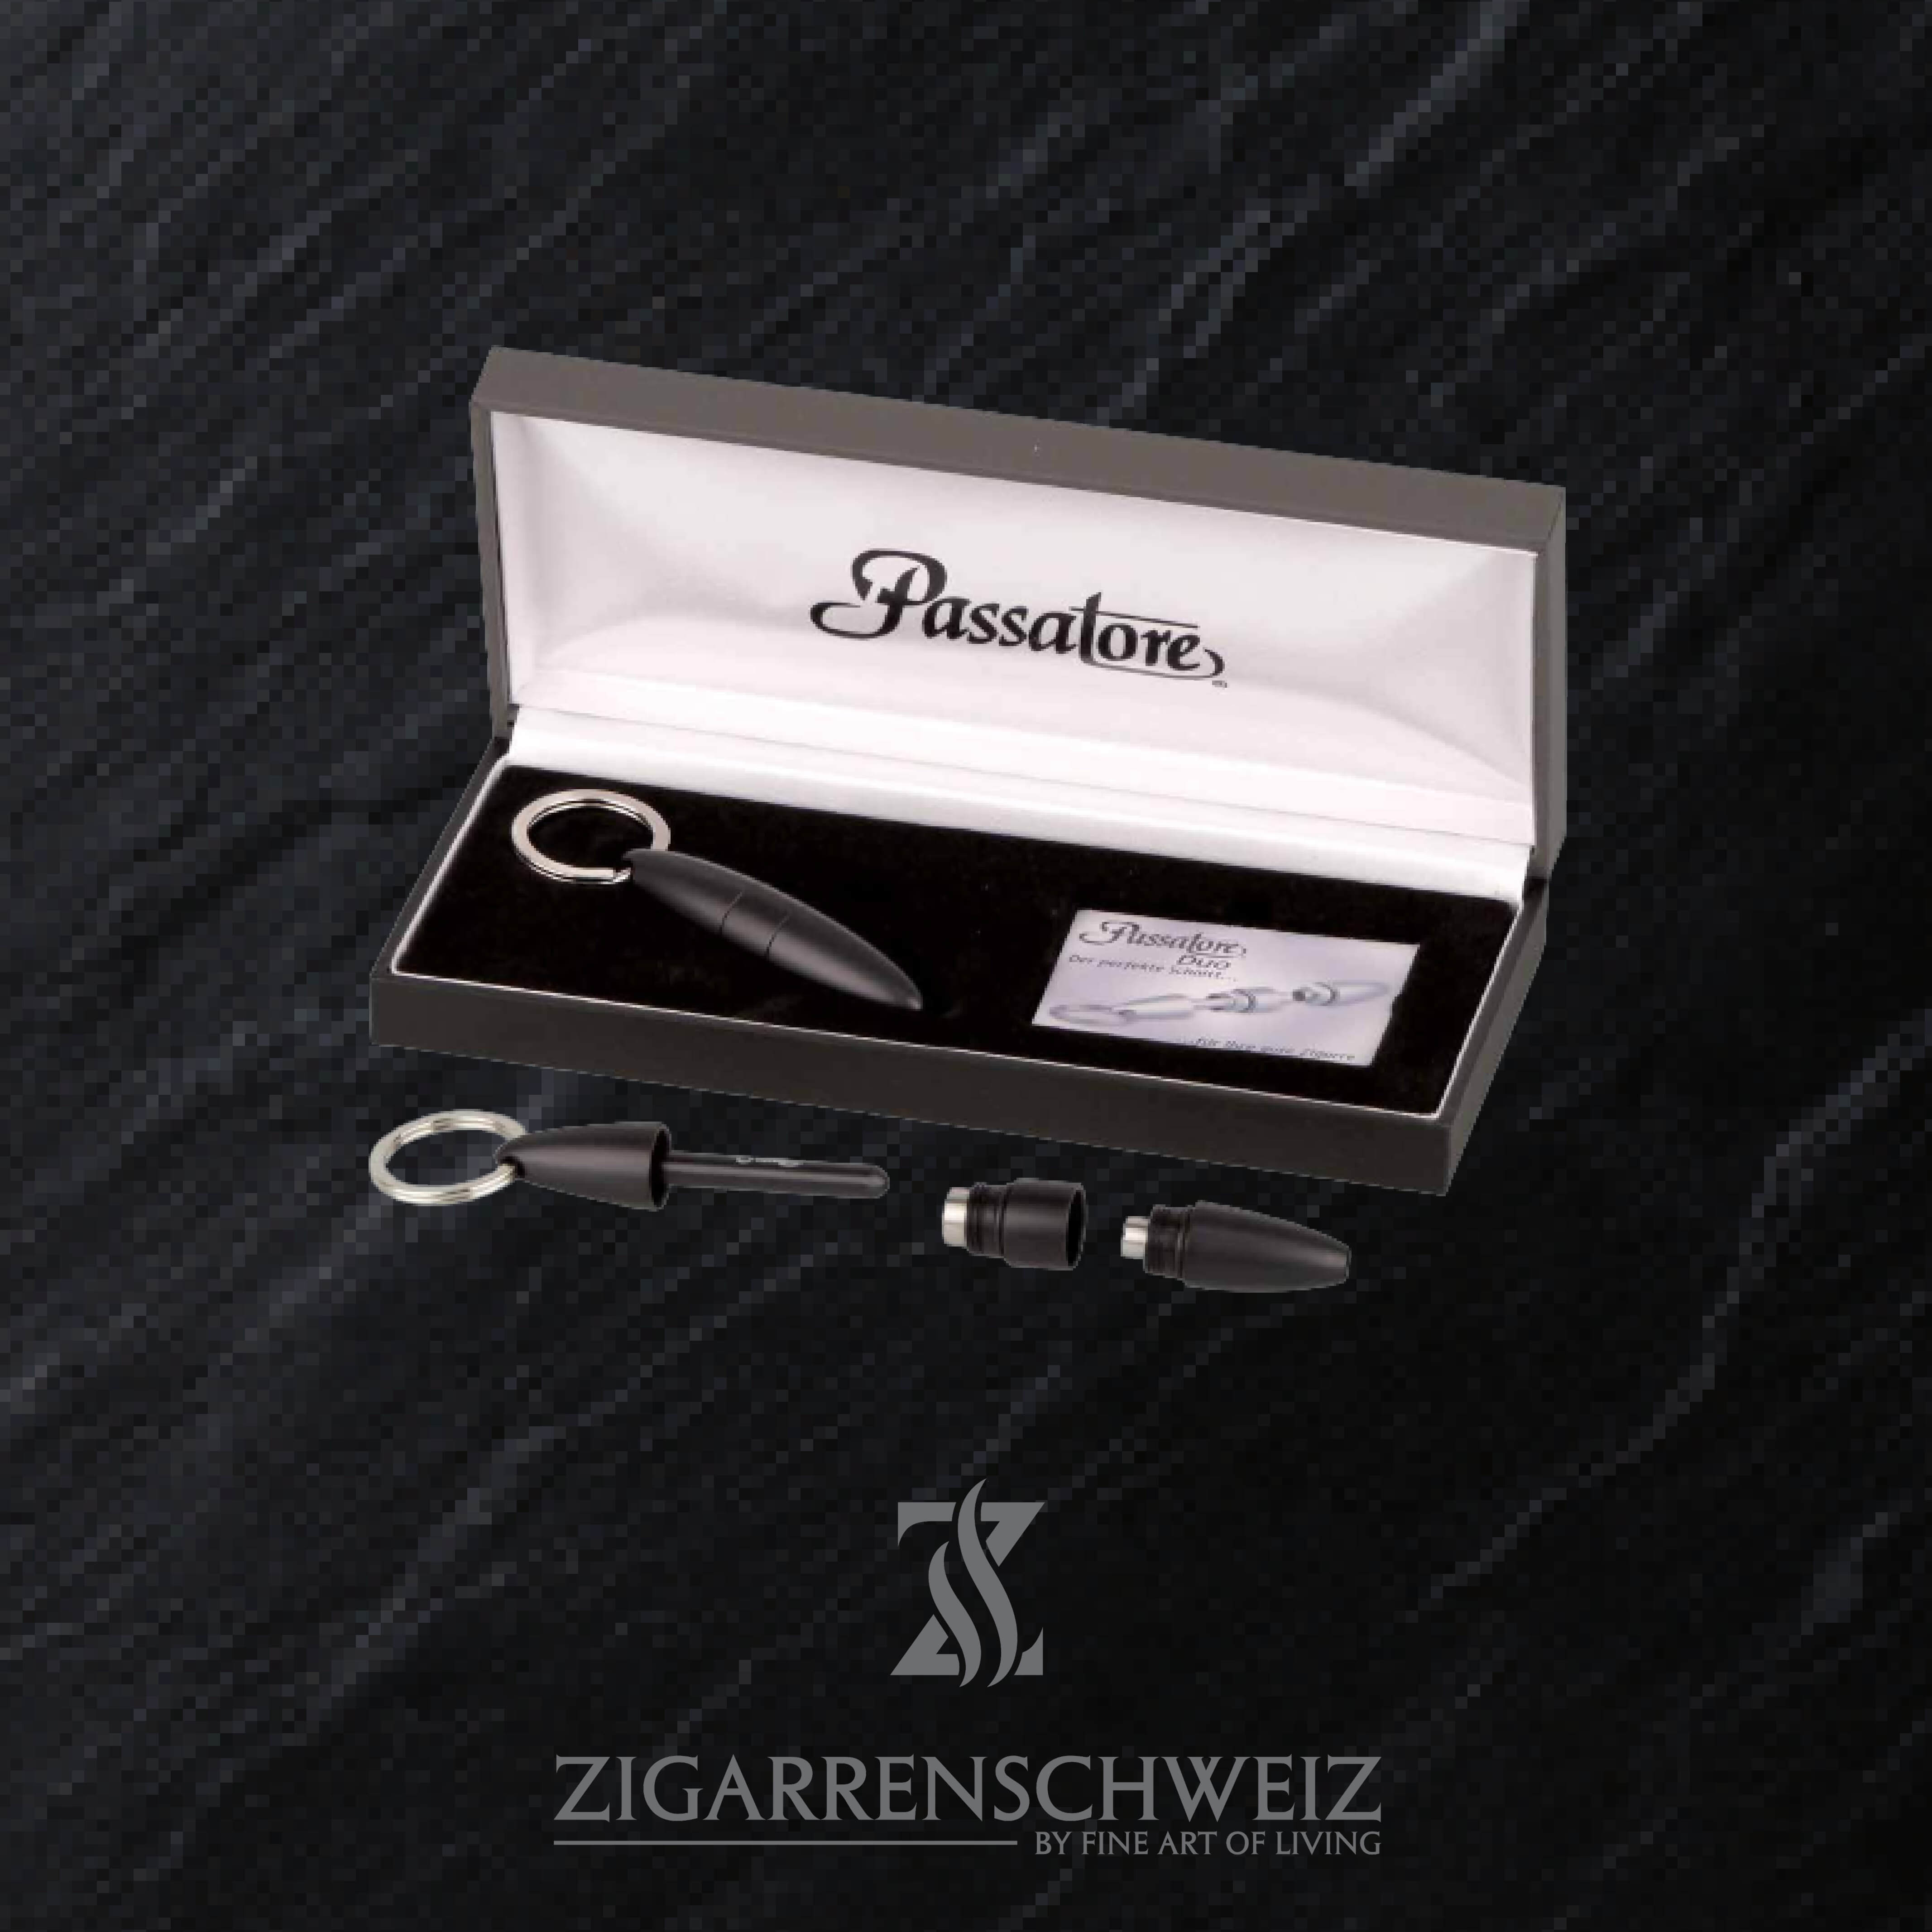 Passatore Zigarren Puncher und Zigarren Bohrer, praktischer Schlüsselanhänger, zwei in eins, mit Verpackung, Farbe: Schwarz